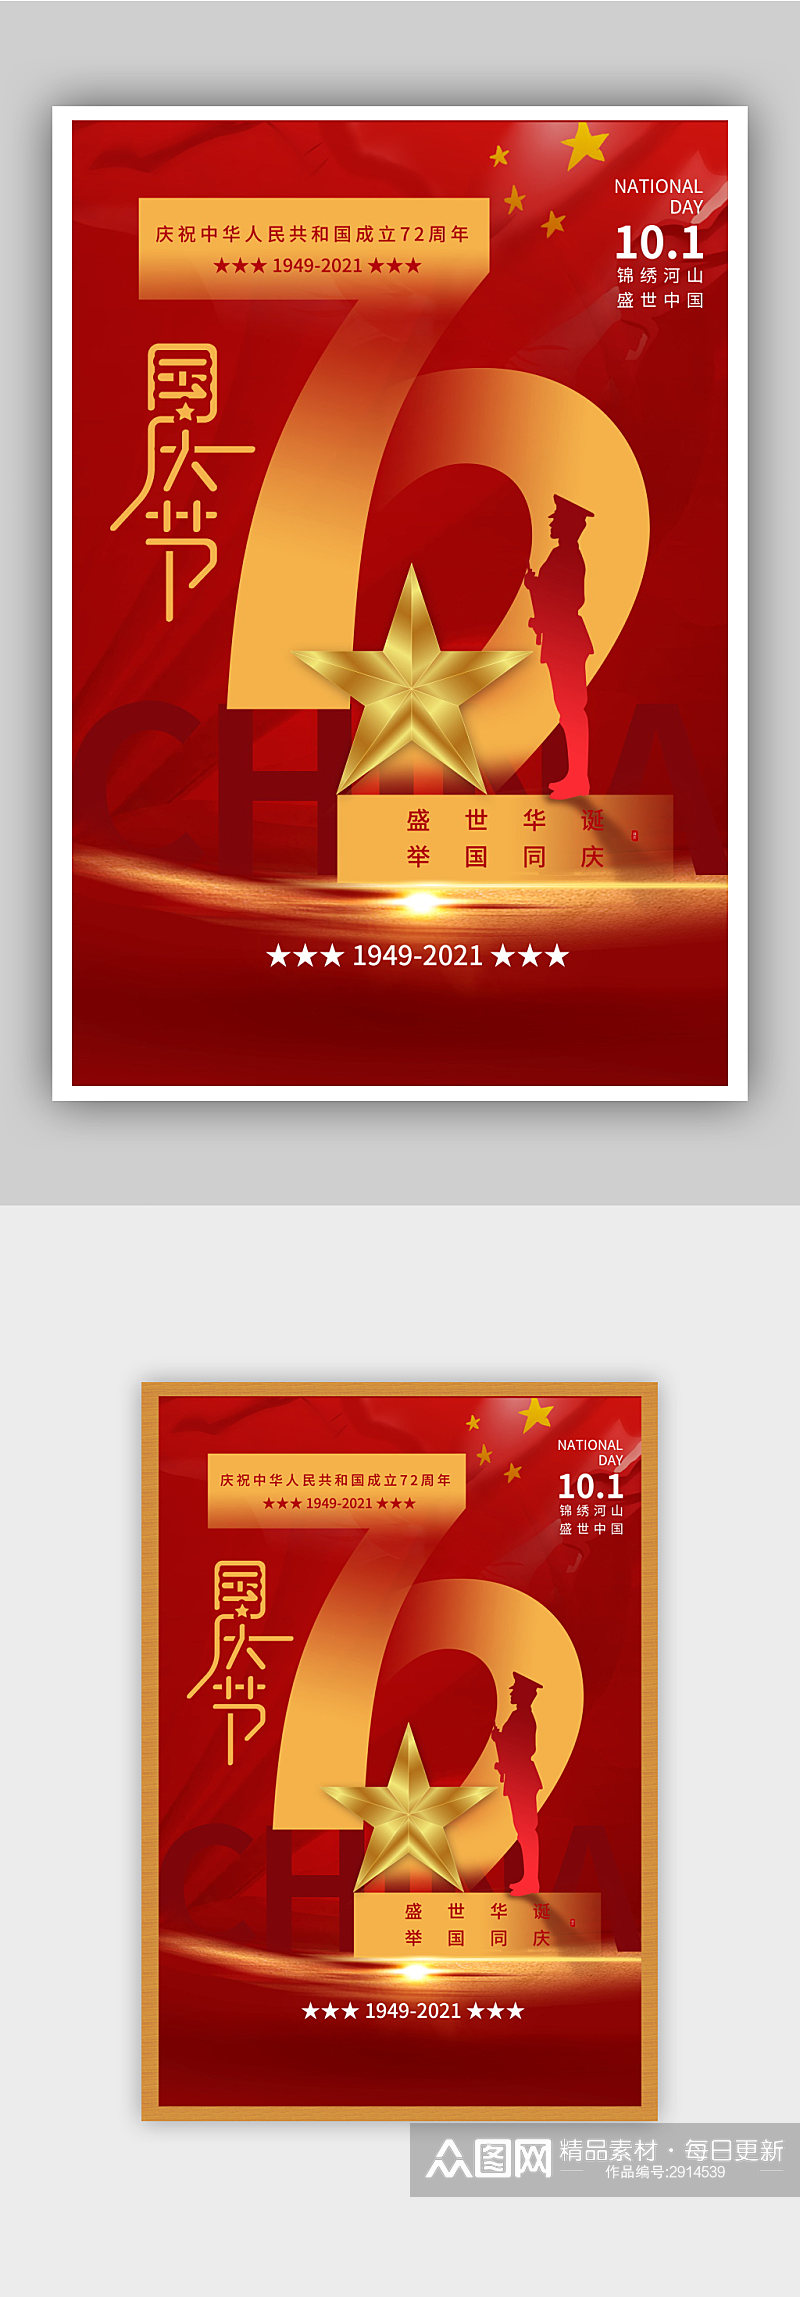 红色国庆节盛世华诞72周年节日海报素材